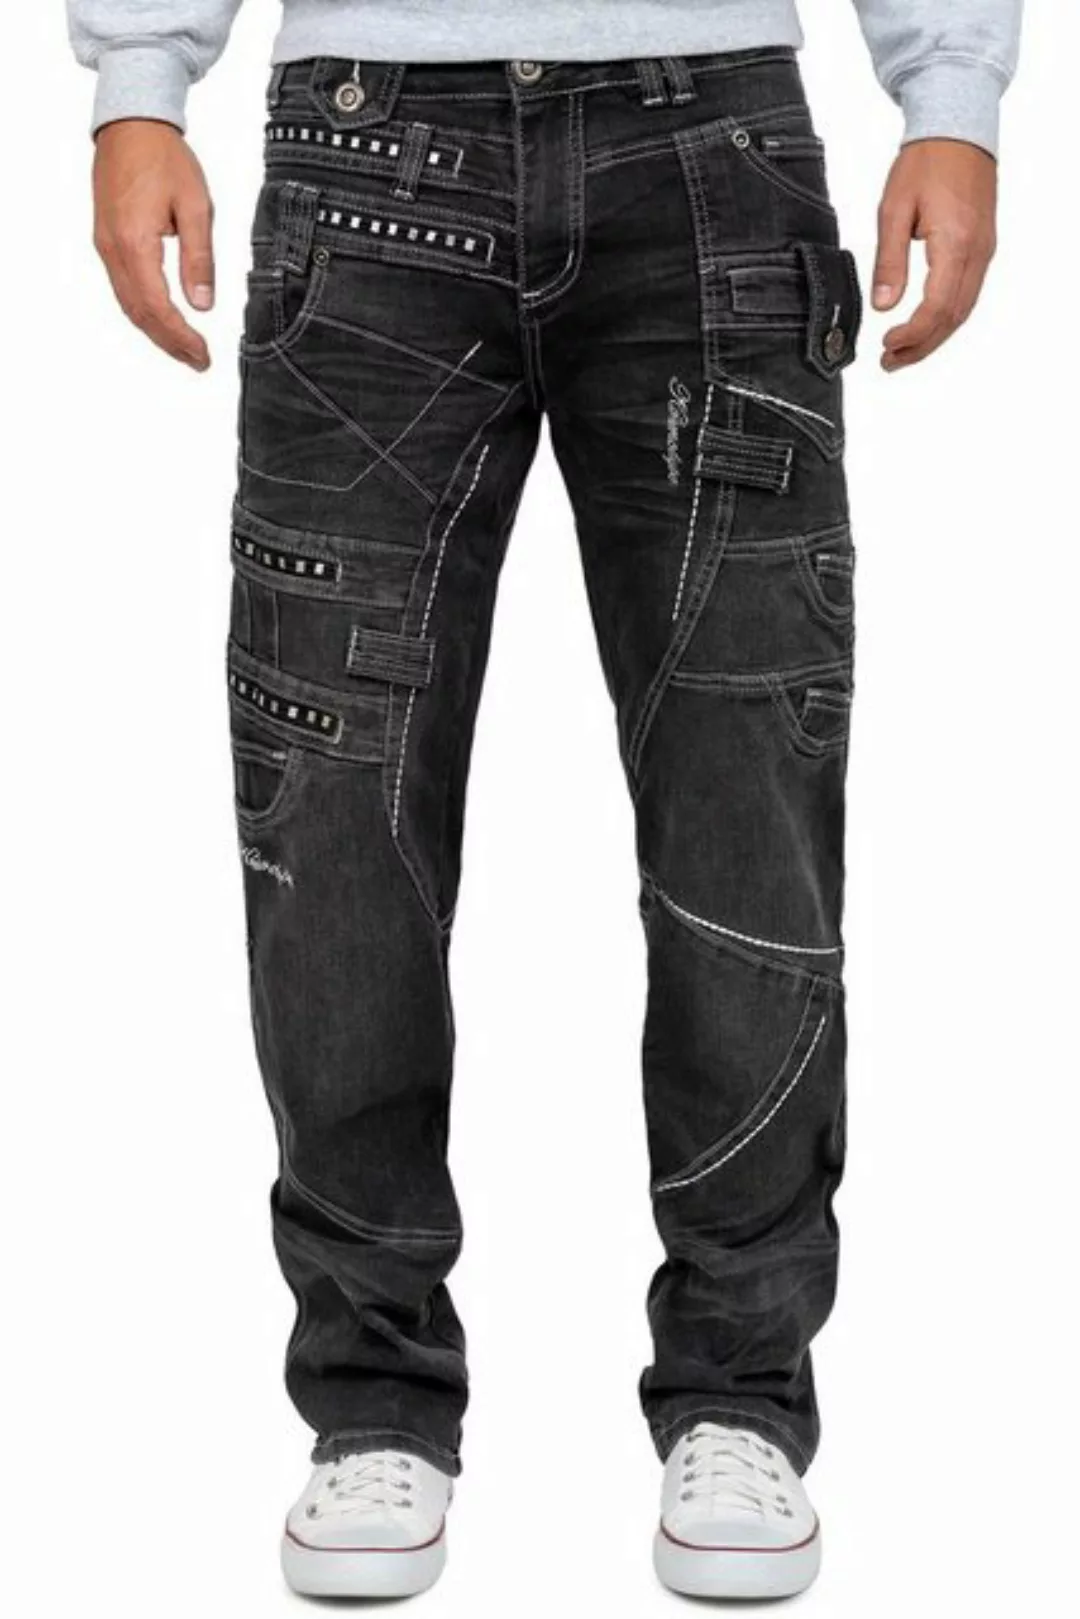 Kosmo Lupo 5-Pocket-Jeans Auffällige Herren Hose BA-KM001 mit Verzierungen günstig online kaufen